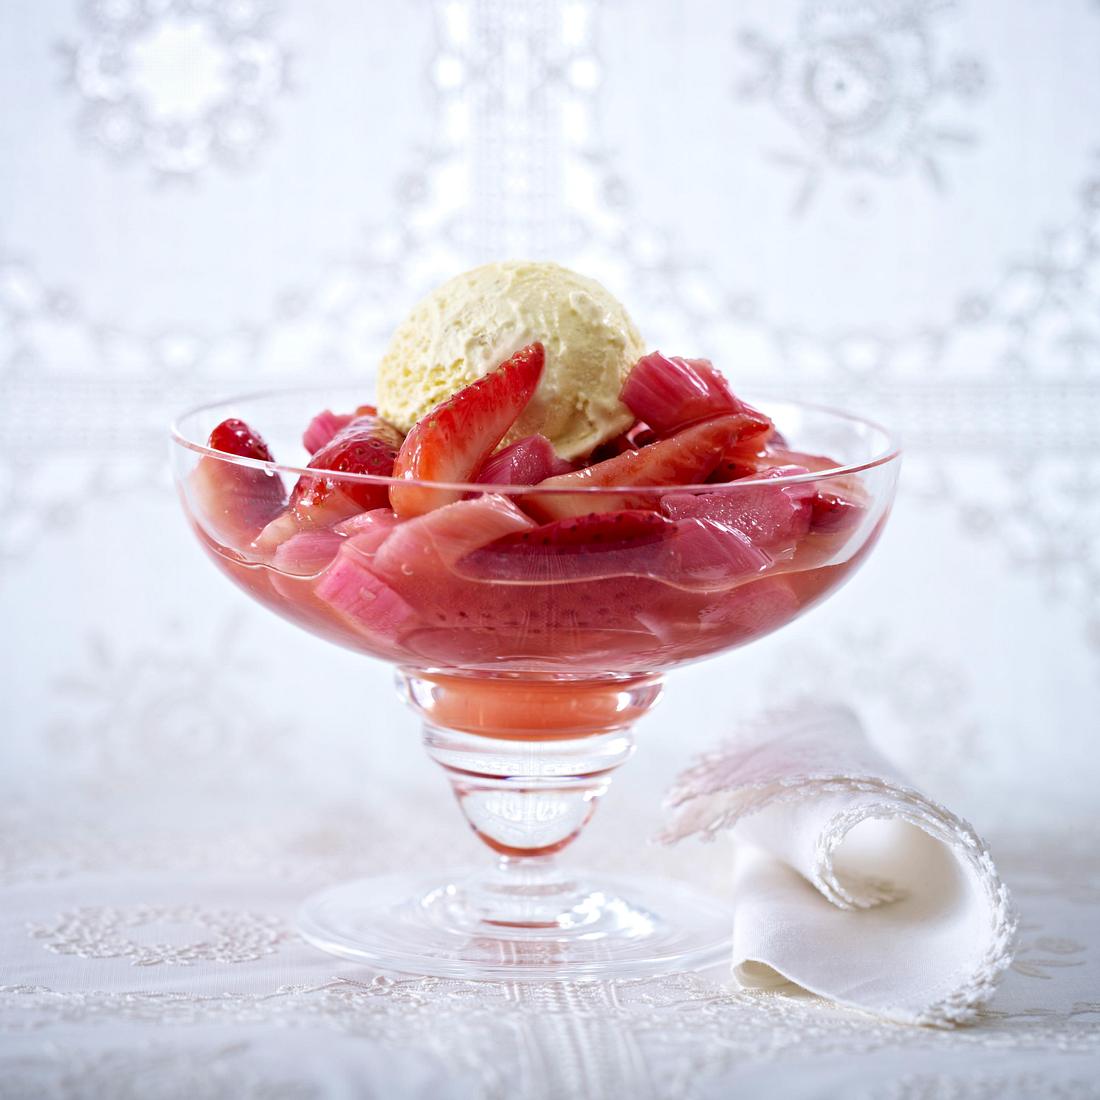 Erdbeer-Rhabarber-Kompott mit Ingwer und Vanilleeis Rezept